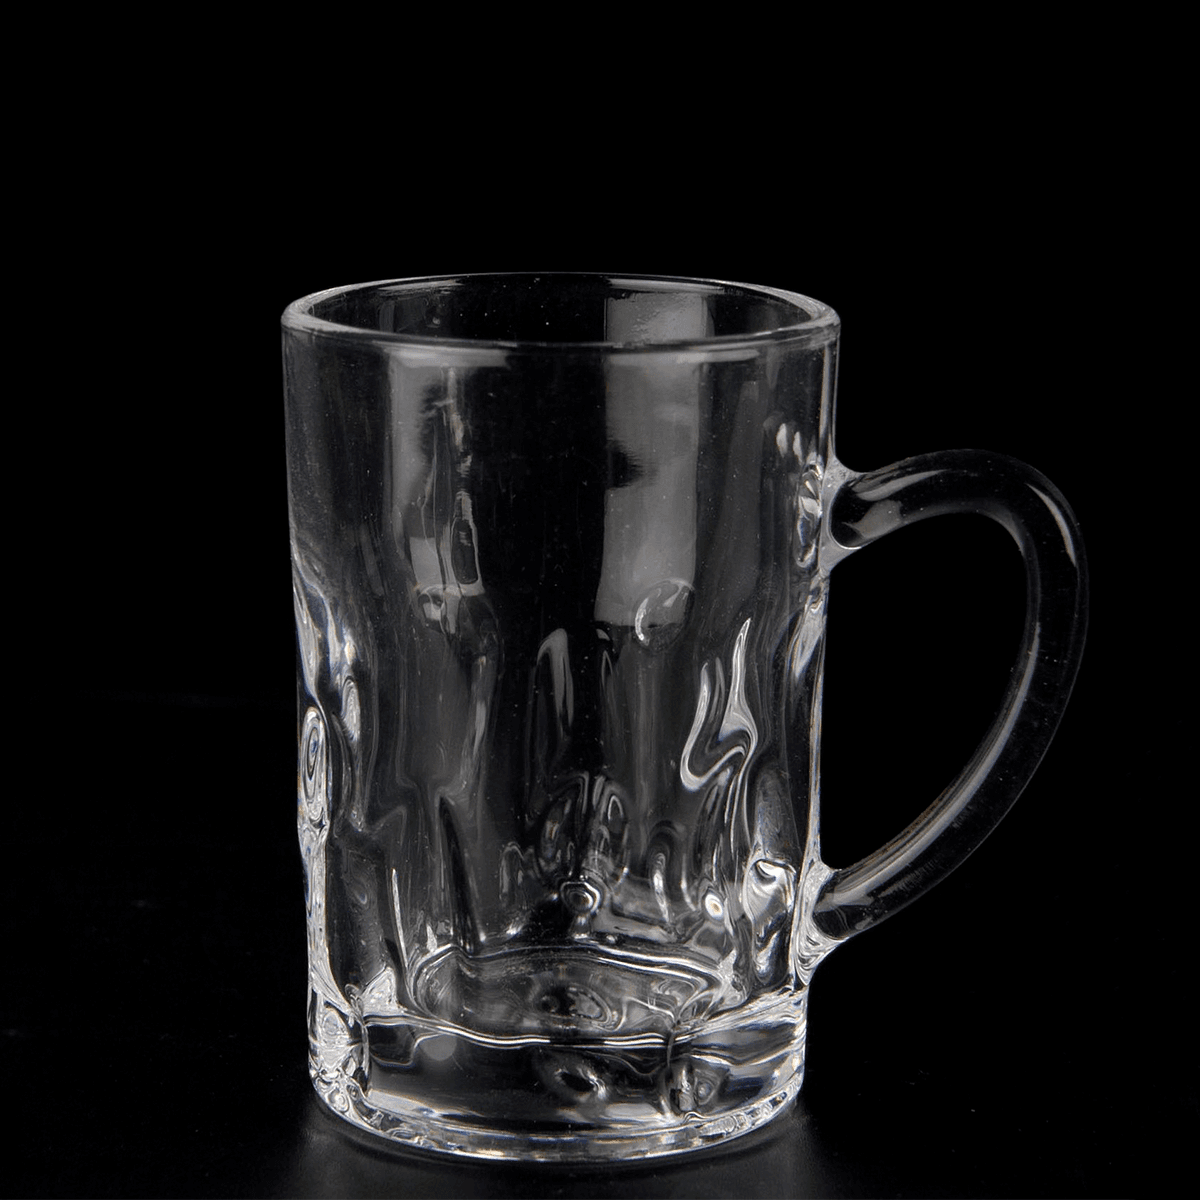 كاس شاهي 116 مل زجاج ڤاج Vague Tea Glass Cups Set 116 ml Transparent Glass